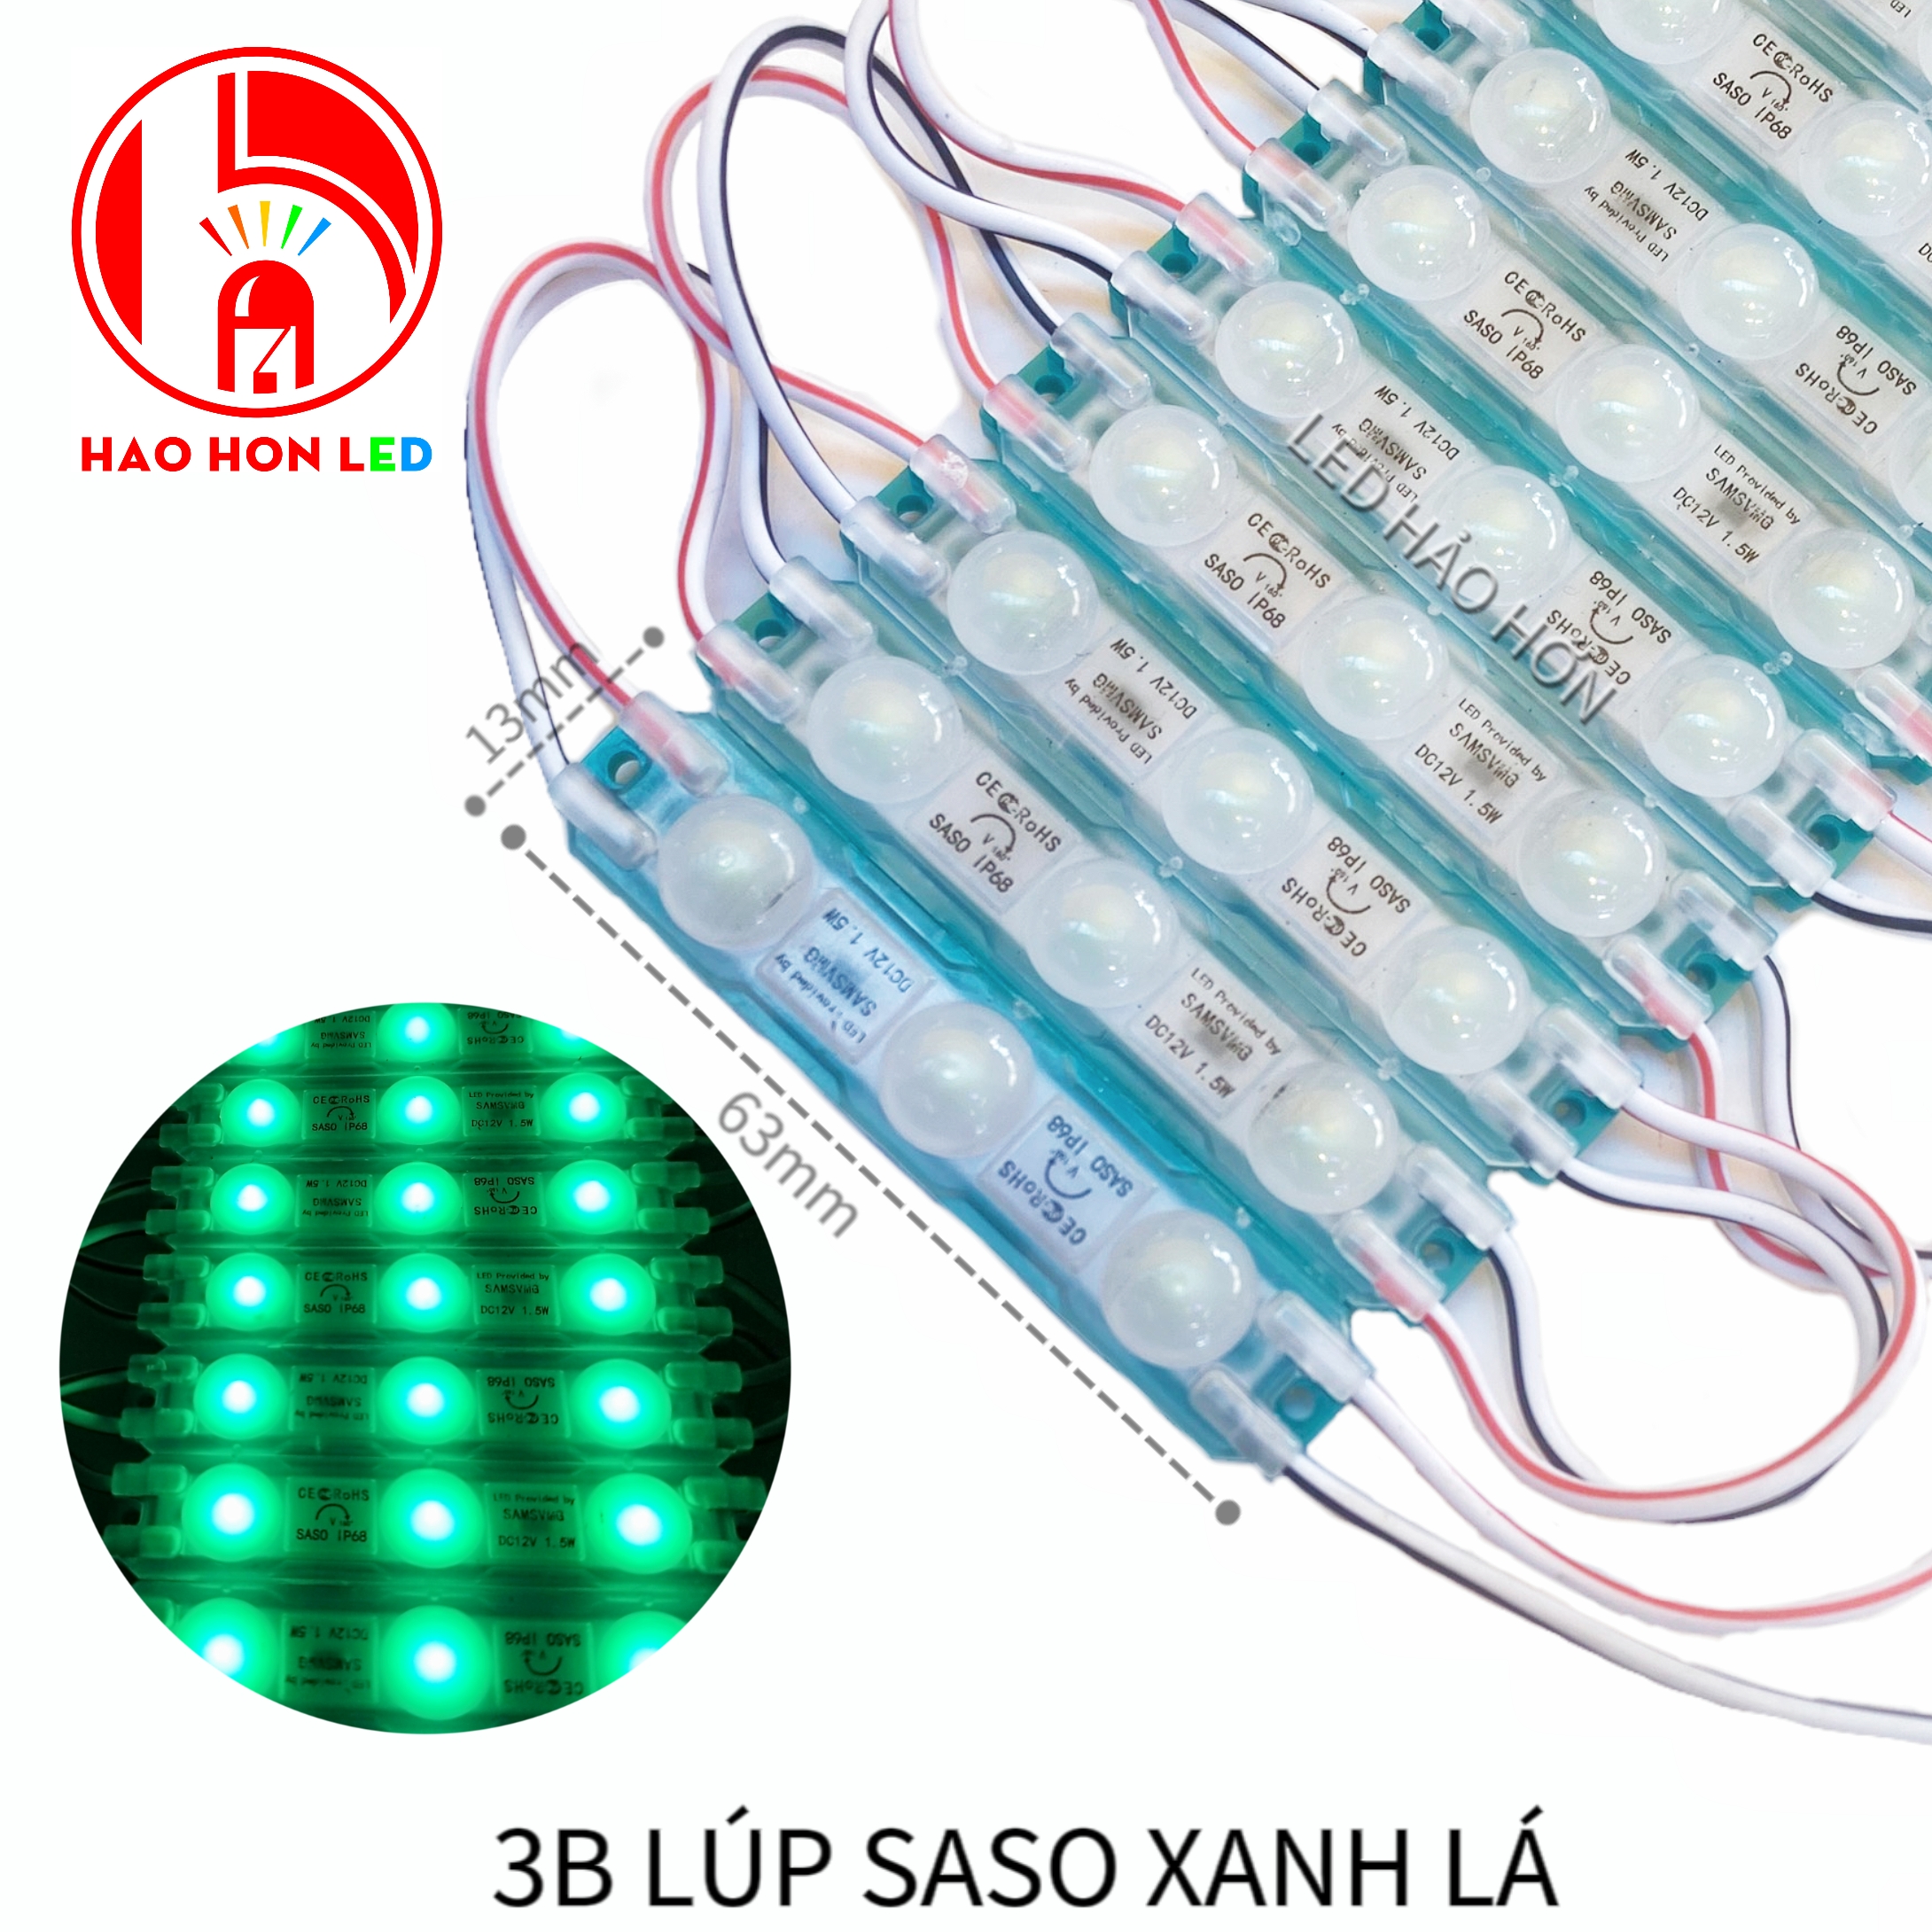 LED HẮT 3B LÚP SASO XANH LÁ 6013